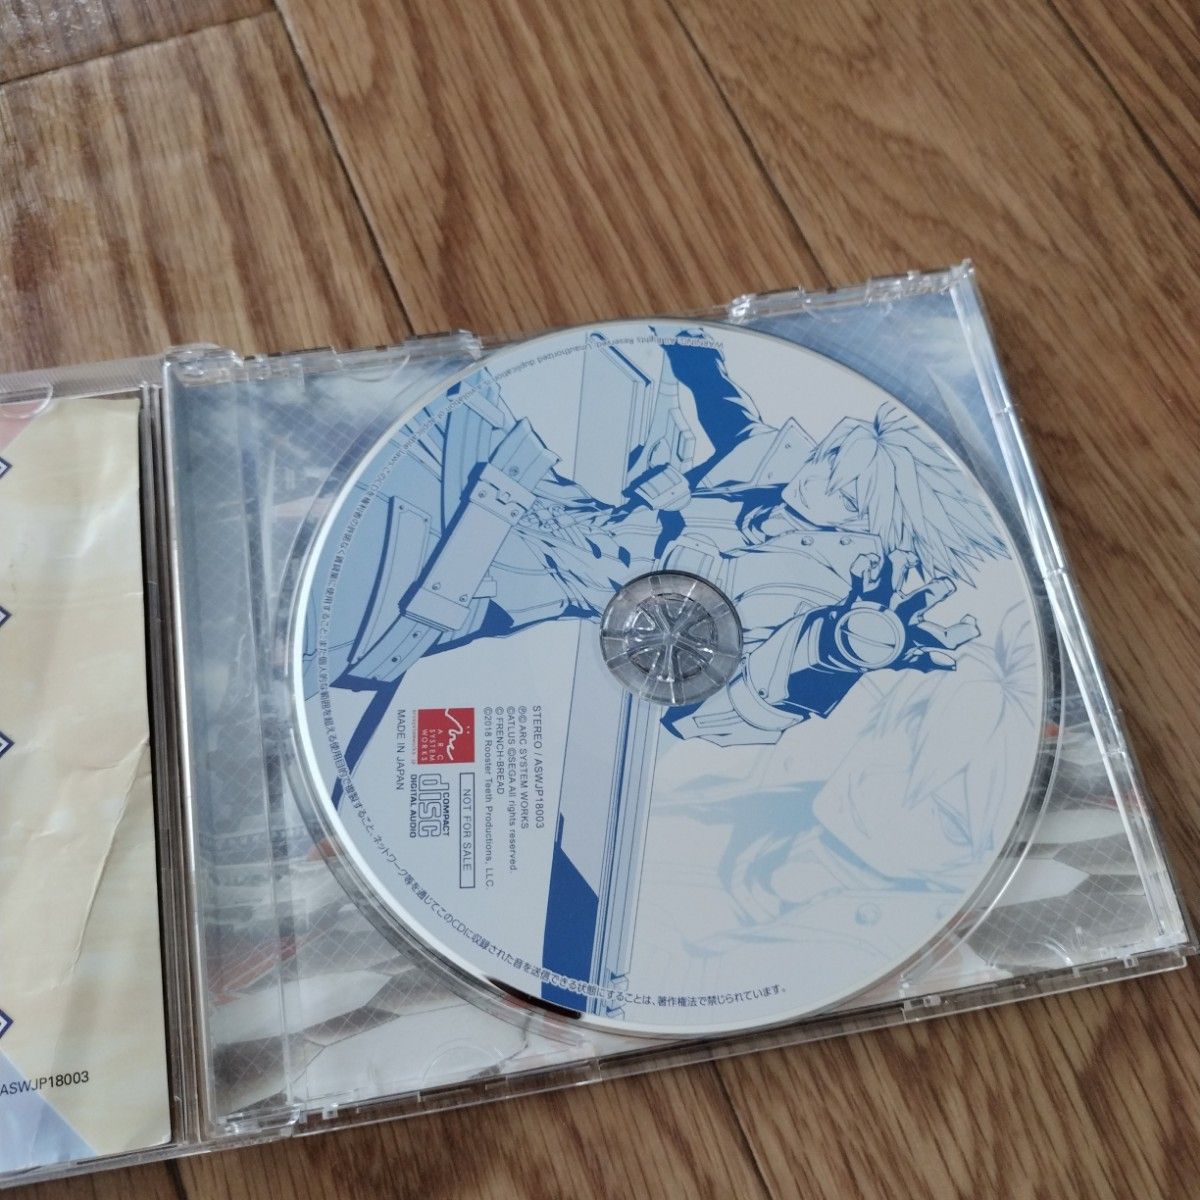 ブレイブルークロスタッグバトルオリジナルサウンドトラック CD